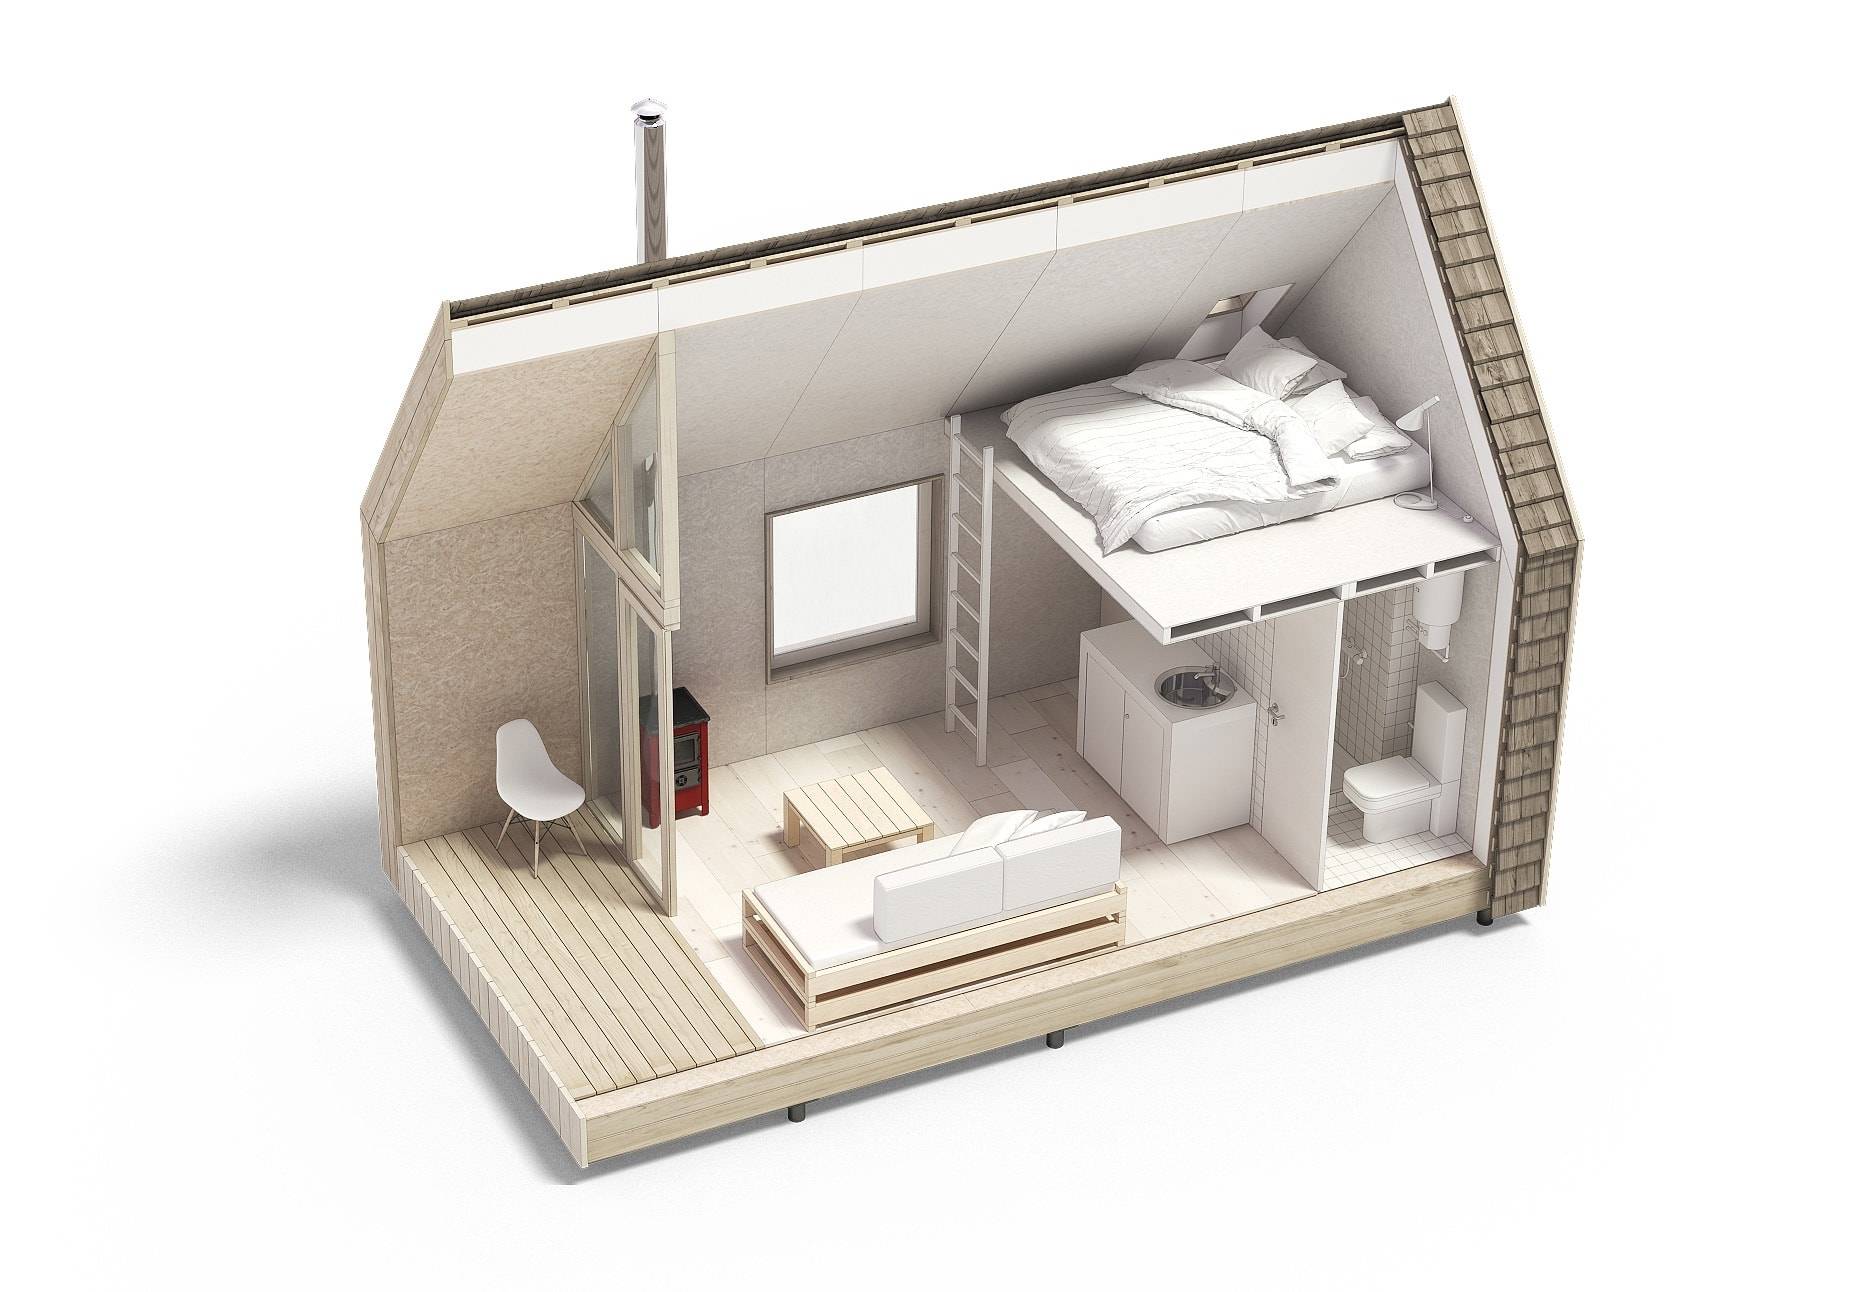 Дизайн интерьера небольшого дома — идеи для собственного маленького коттеджа (52 фото)